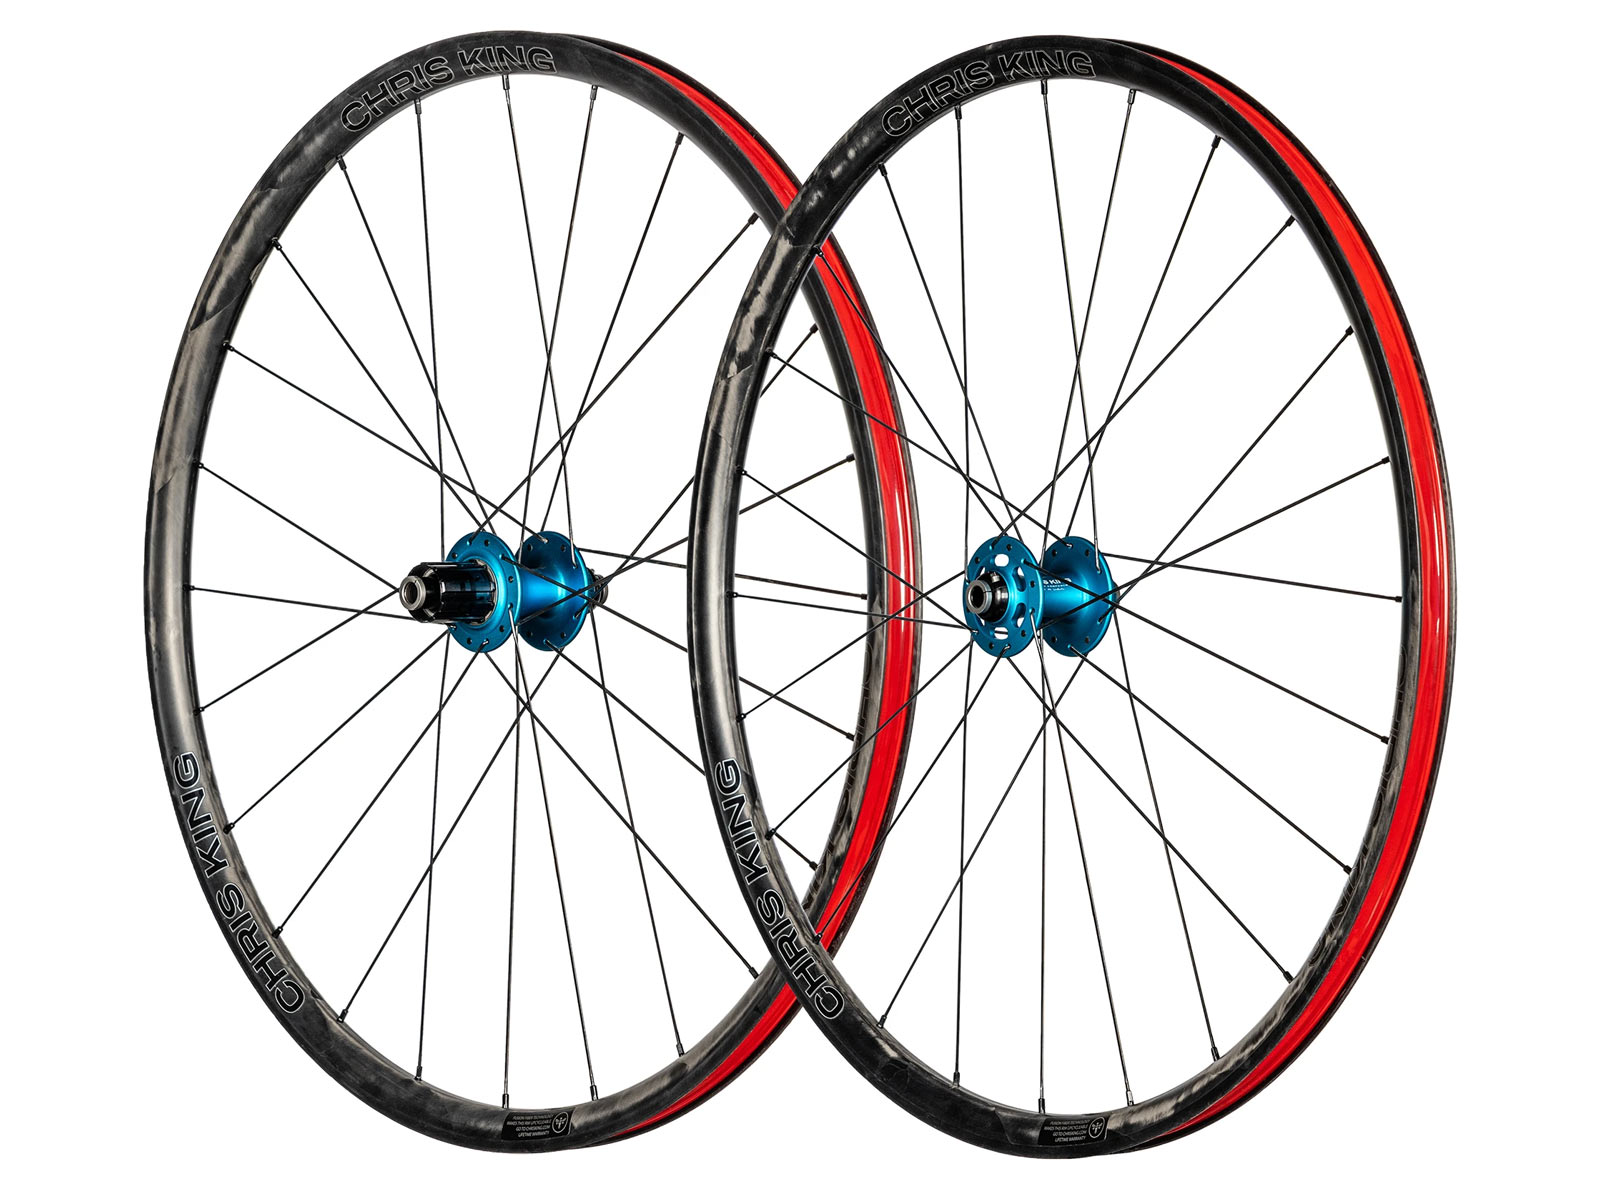 chris king grd23 carbon fiber gravel bike wheels